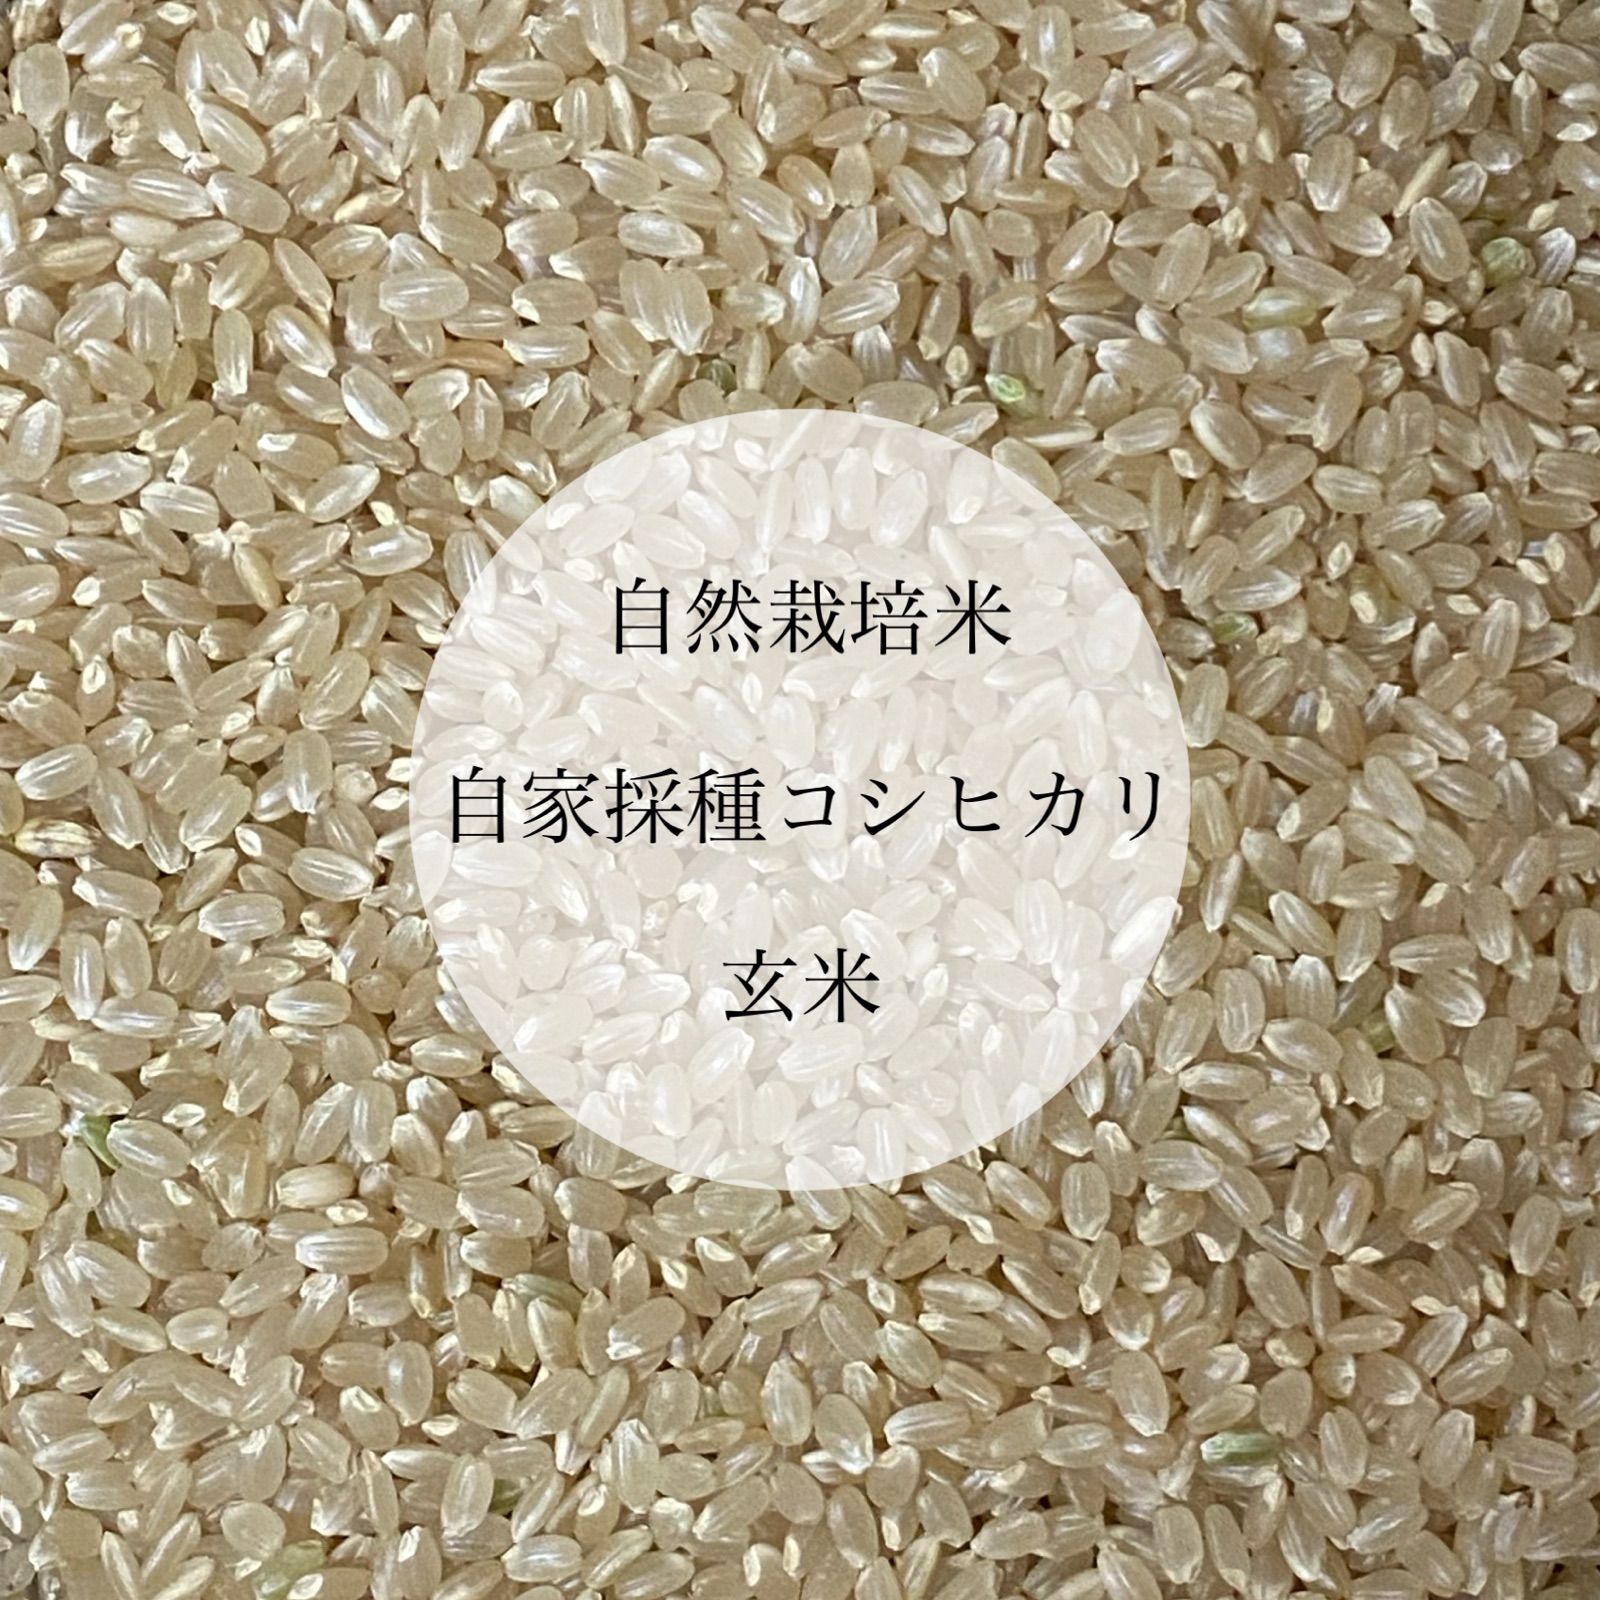 様専用 新米コシヒカリ玄米20kg(5kg×4)、焼き海苔 半切40枚分 | yamaha